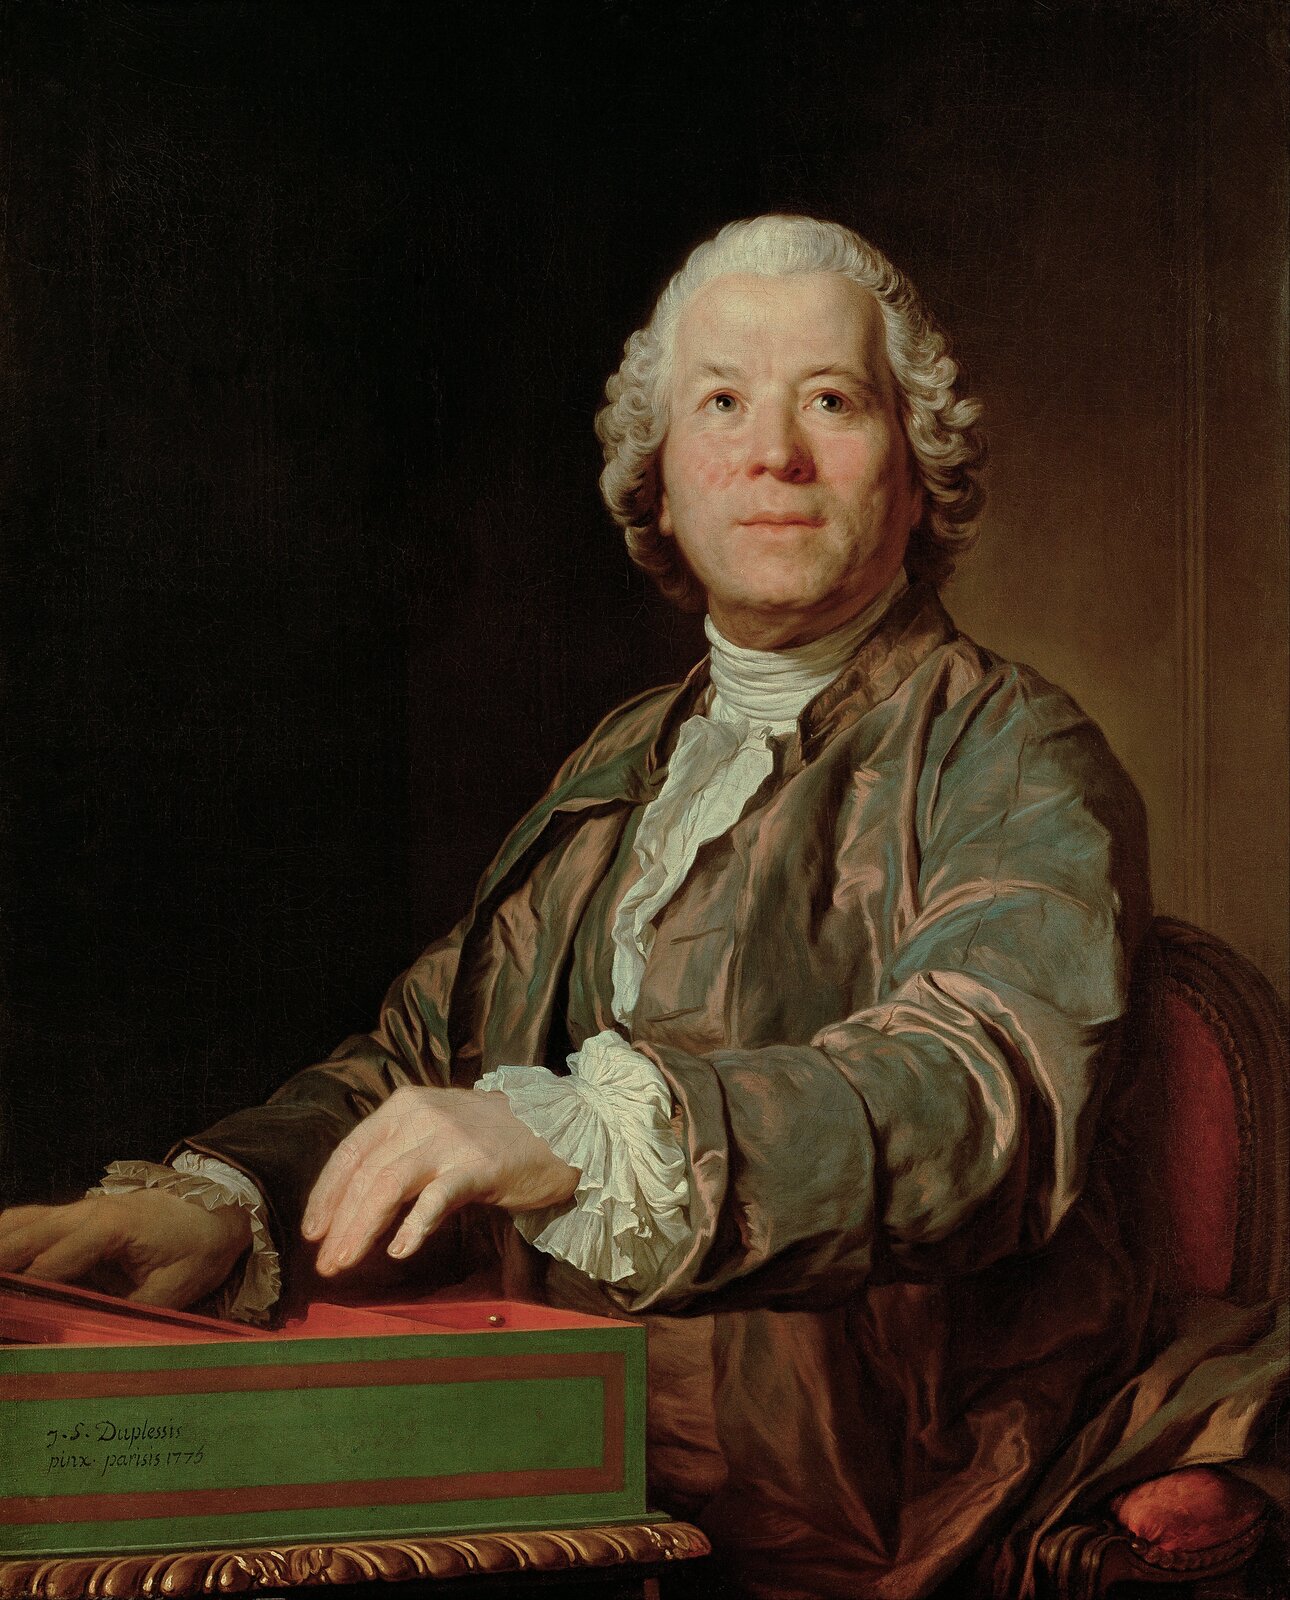 Ilustracja przedstawia dzieło Joseph Duplessis pt. Christopha Willibalda Gluck. Mężczyzna siedzi przy stoliku, ubrany jest w brązowy frak i białą koszulę. Włosy ma dłuższe, lekko podkręcone. Patrzy ku górze, ma przyjazny wyraz twarzy.